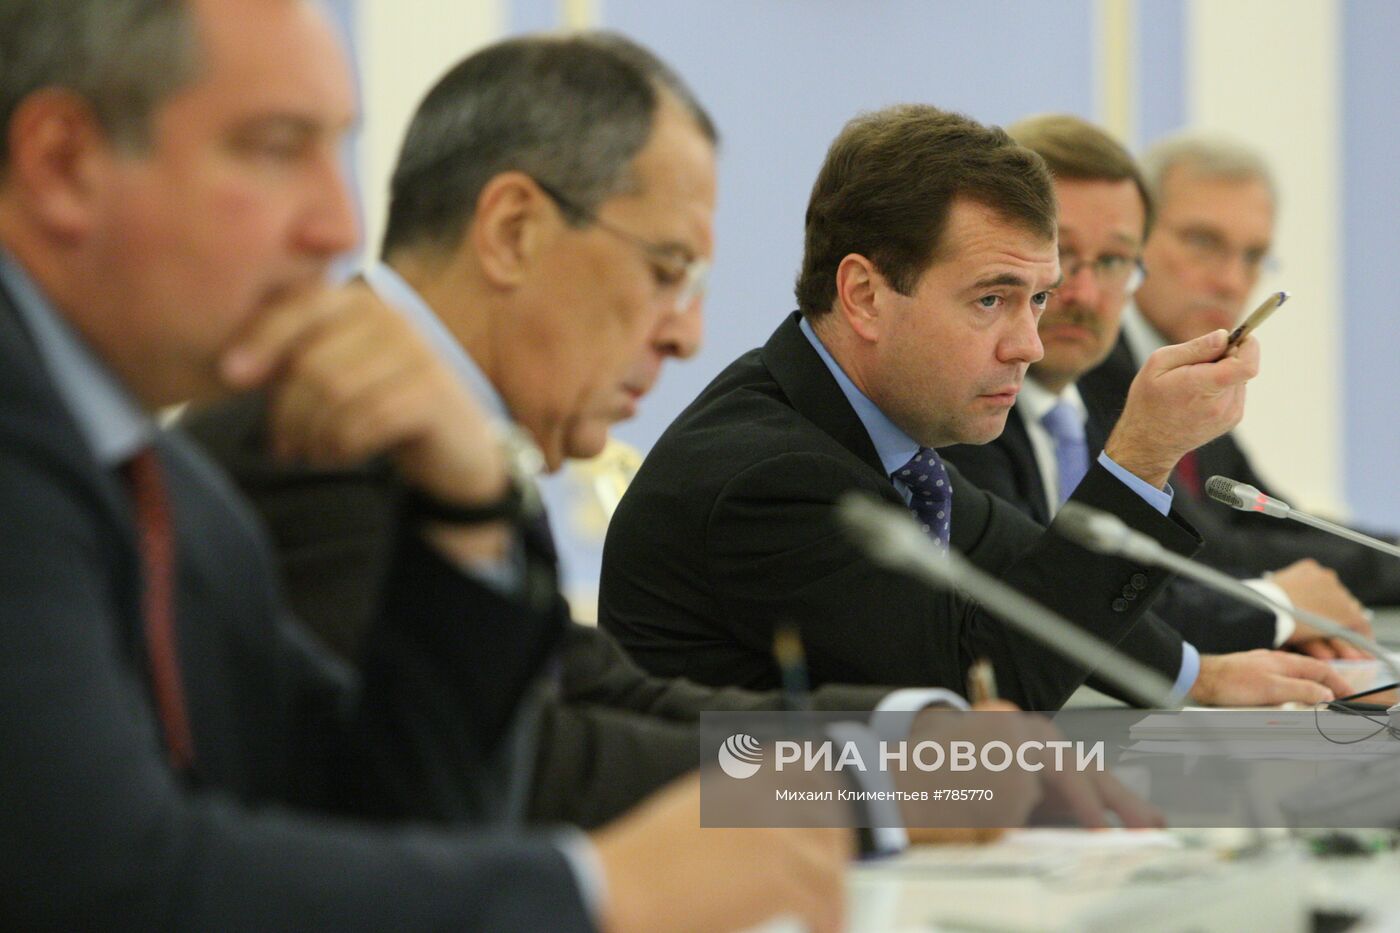 Д.Медведев встретился с участниками Мюнхенской конференции